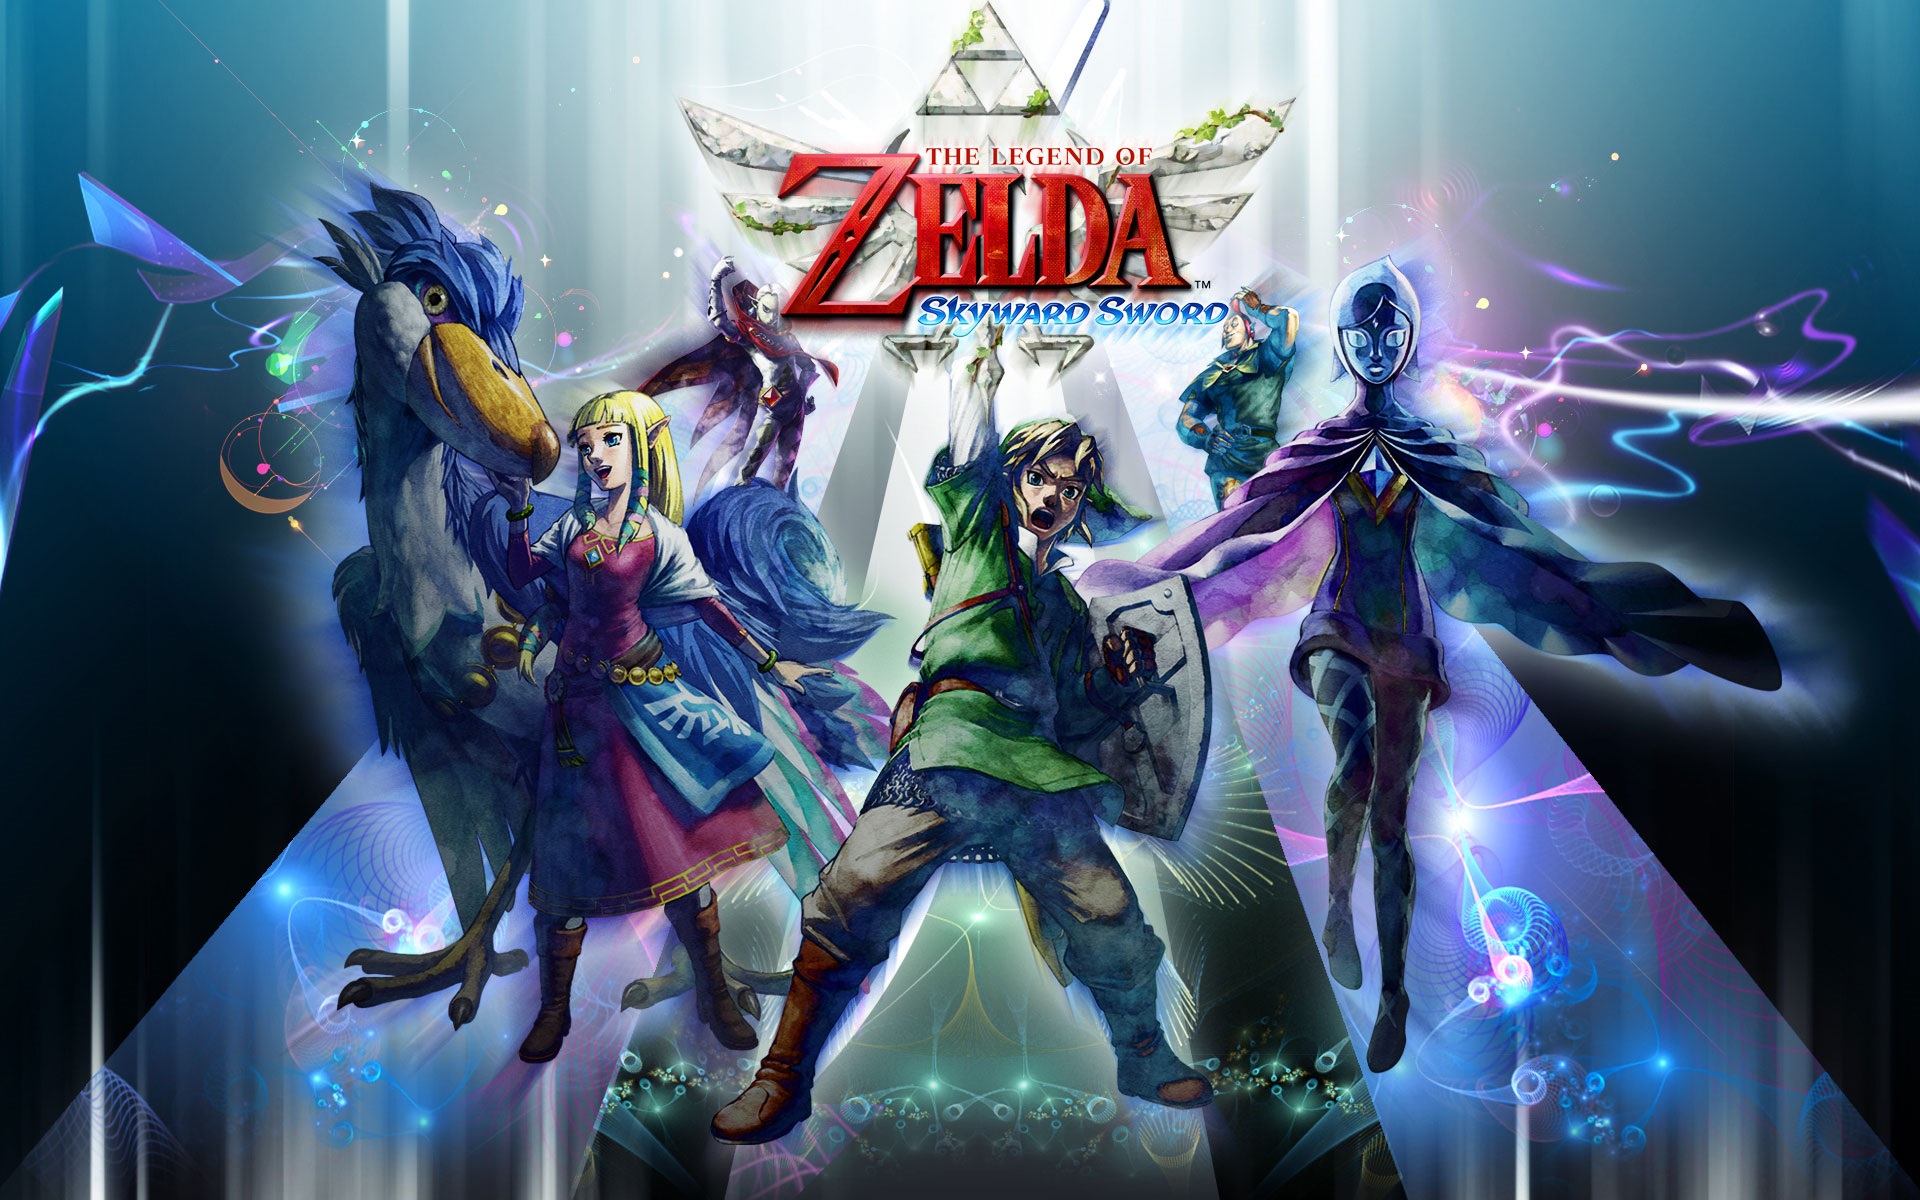 video game, the legend of zelda: skyward sword, fi (the legend of zelda), ghirahim (the legend of zelda), groose (the legend of zelda), link, zelda